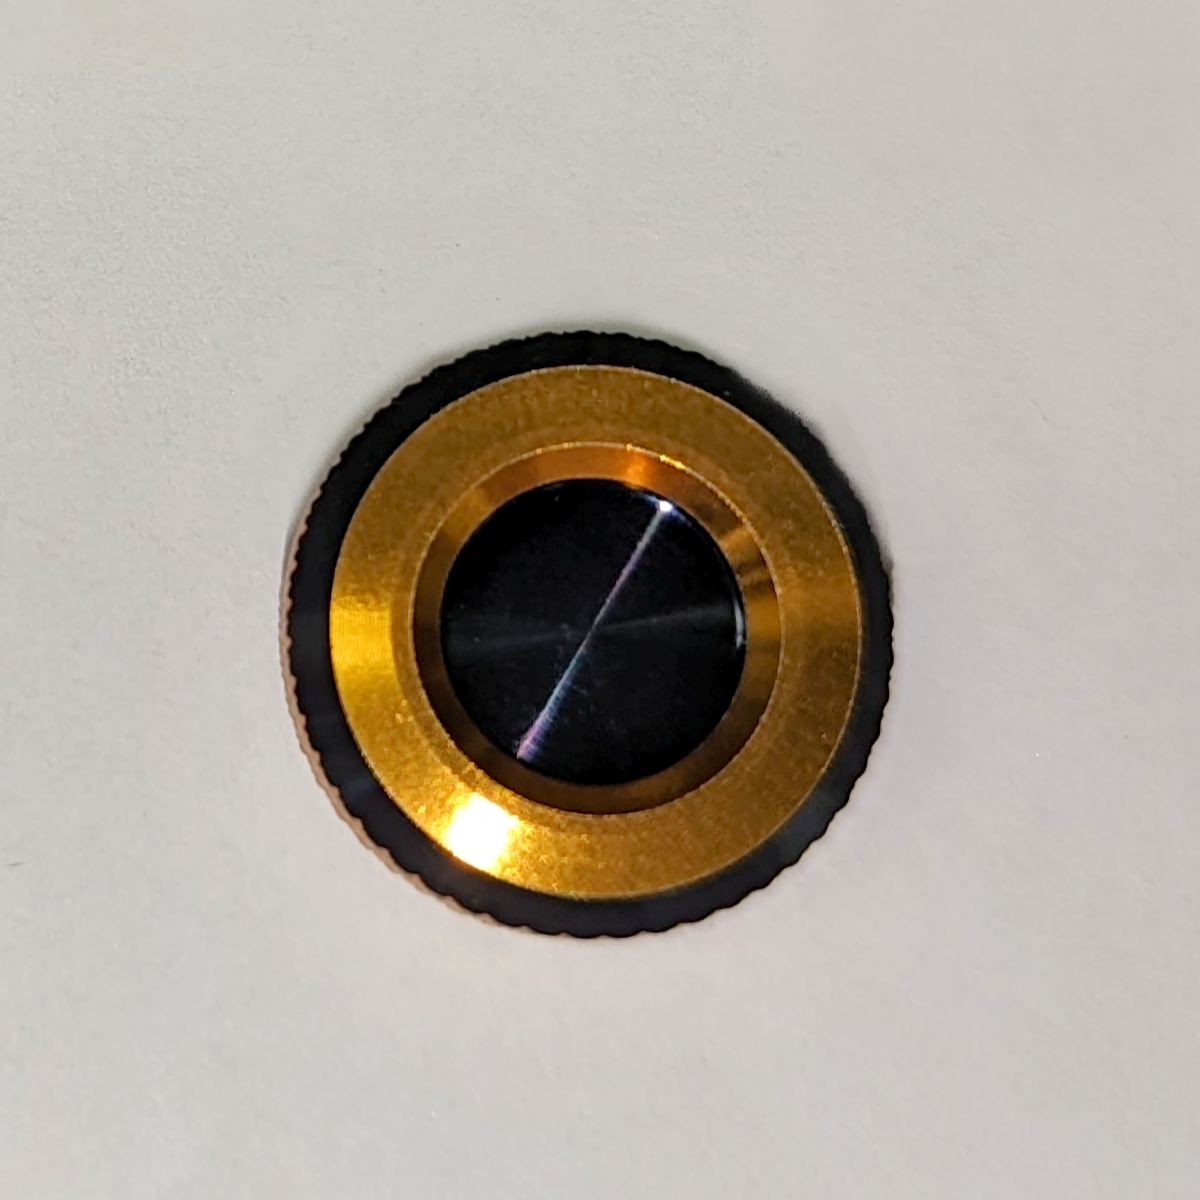 233A-SLA3500 Cap, Handle Cap (Closed Bearing Cover) (Gold w/ Black Accent)